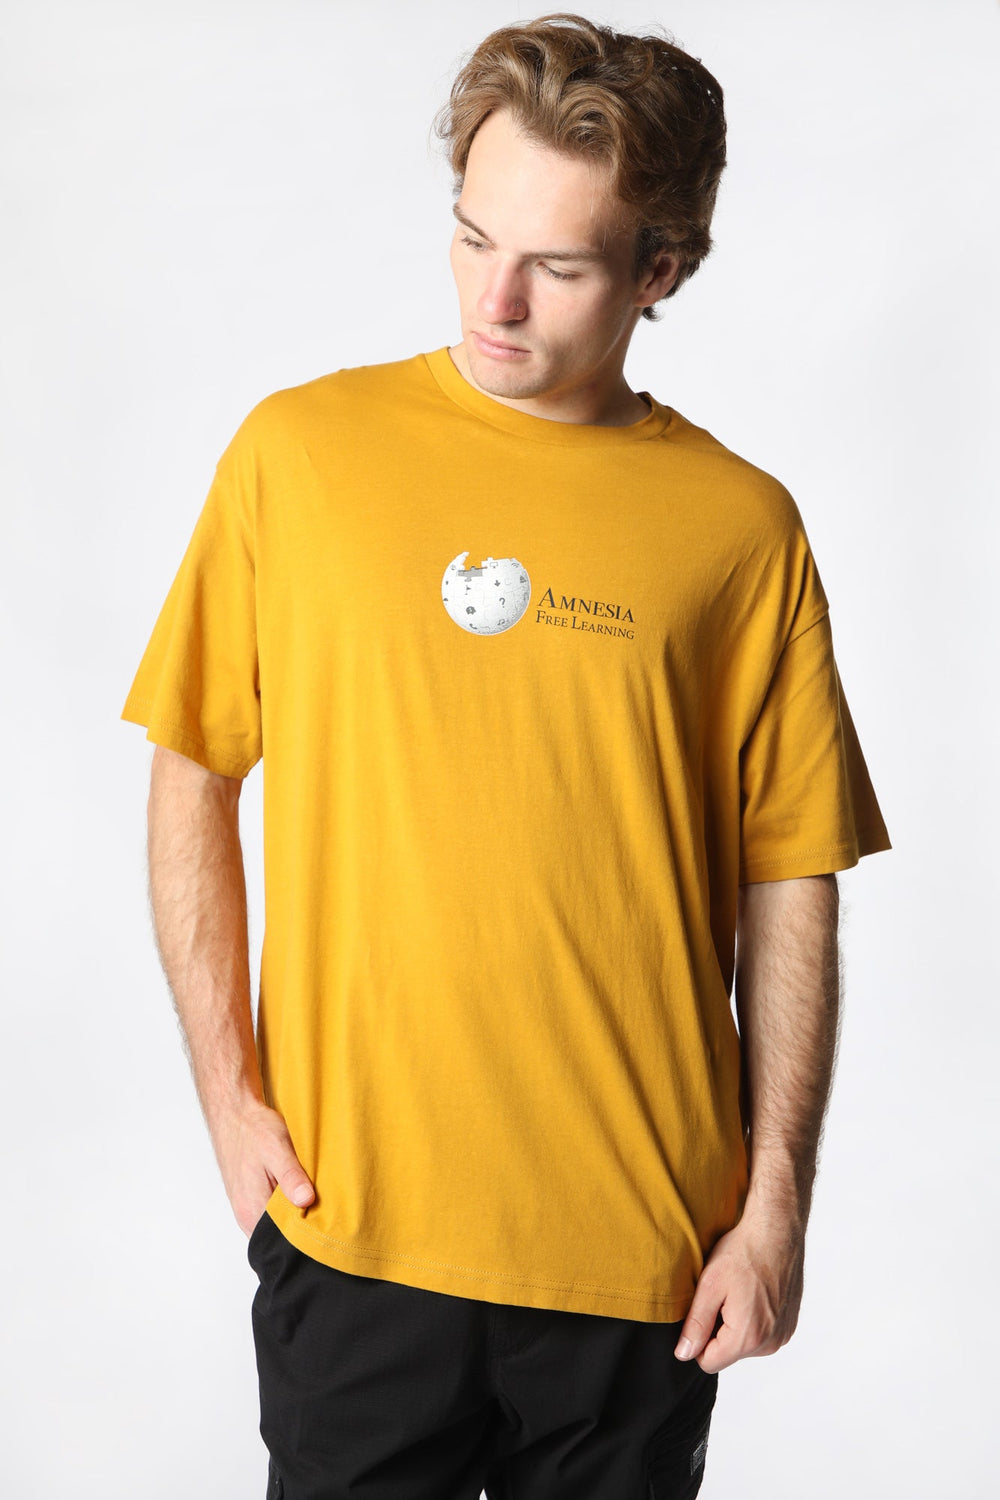 T-Shirt Imprimé Amnesia Homme Moutarde